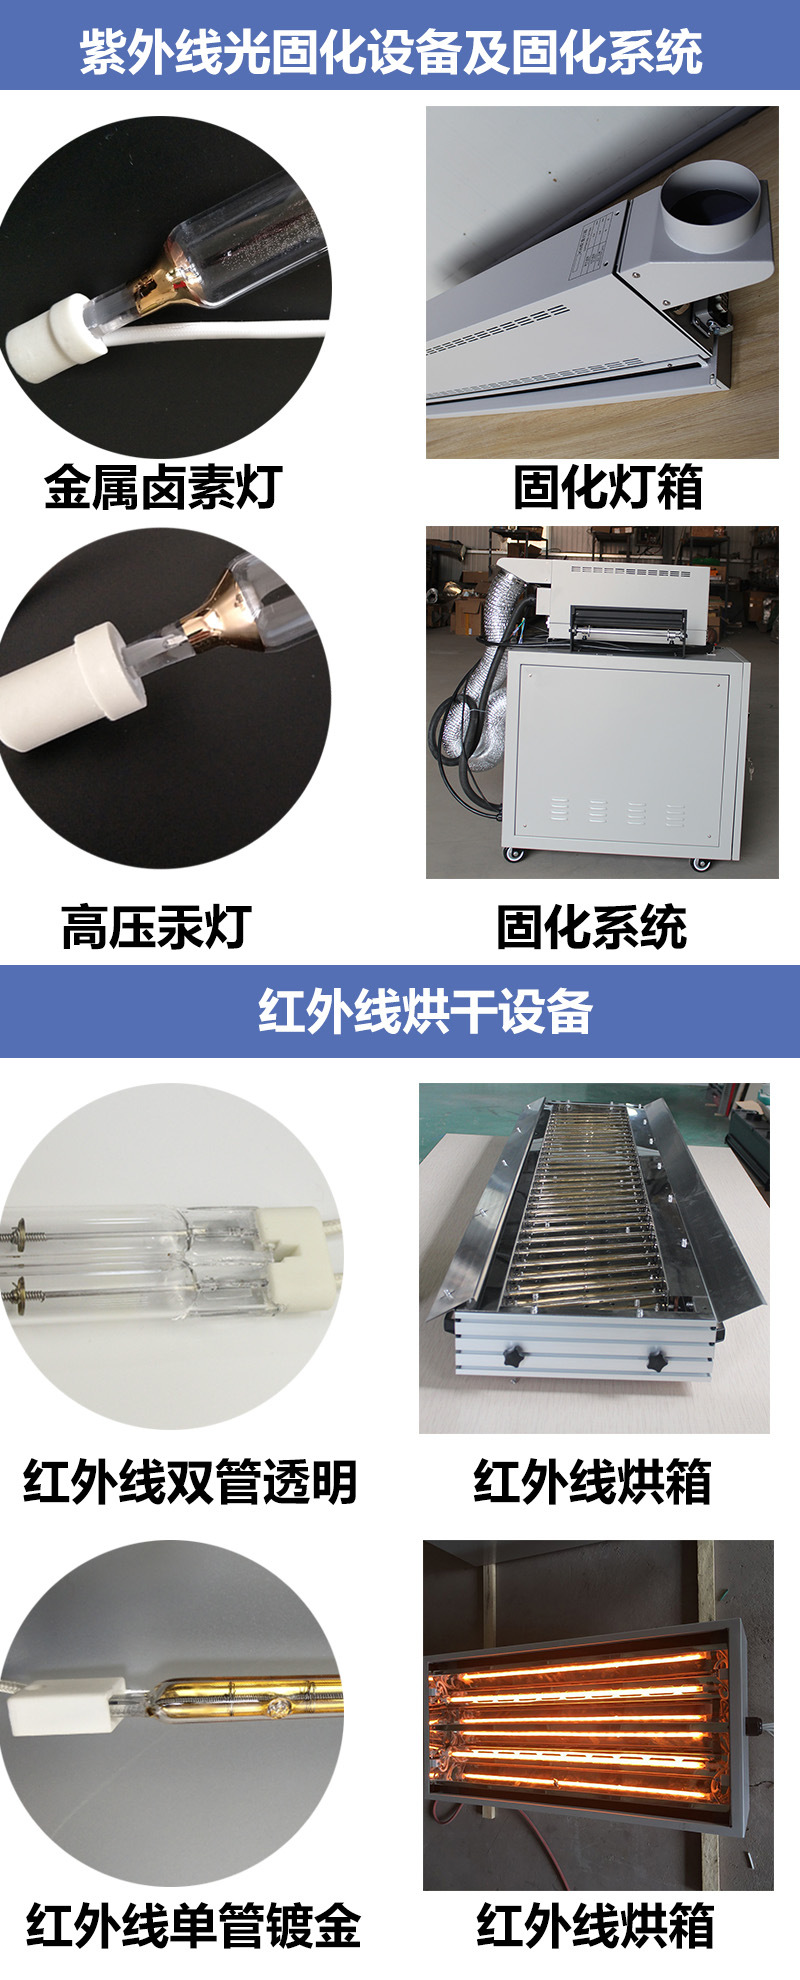 小型uv固化机_直销小型uv固化机紫外线修复固化装置可订制